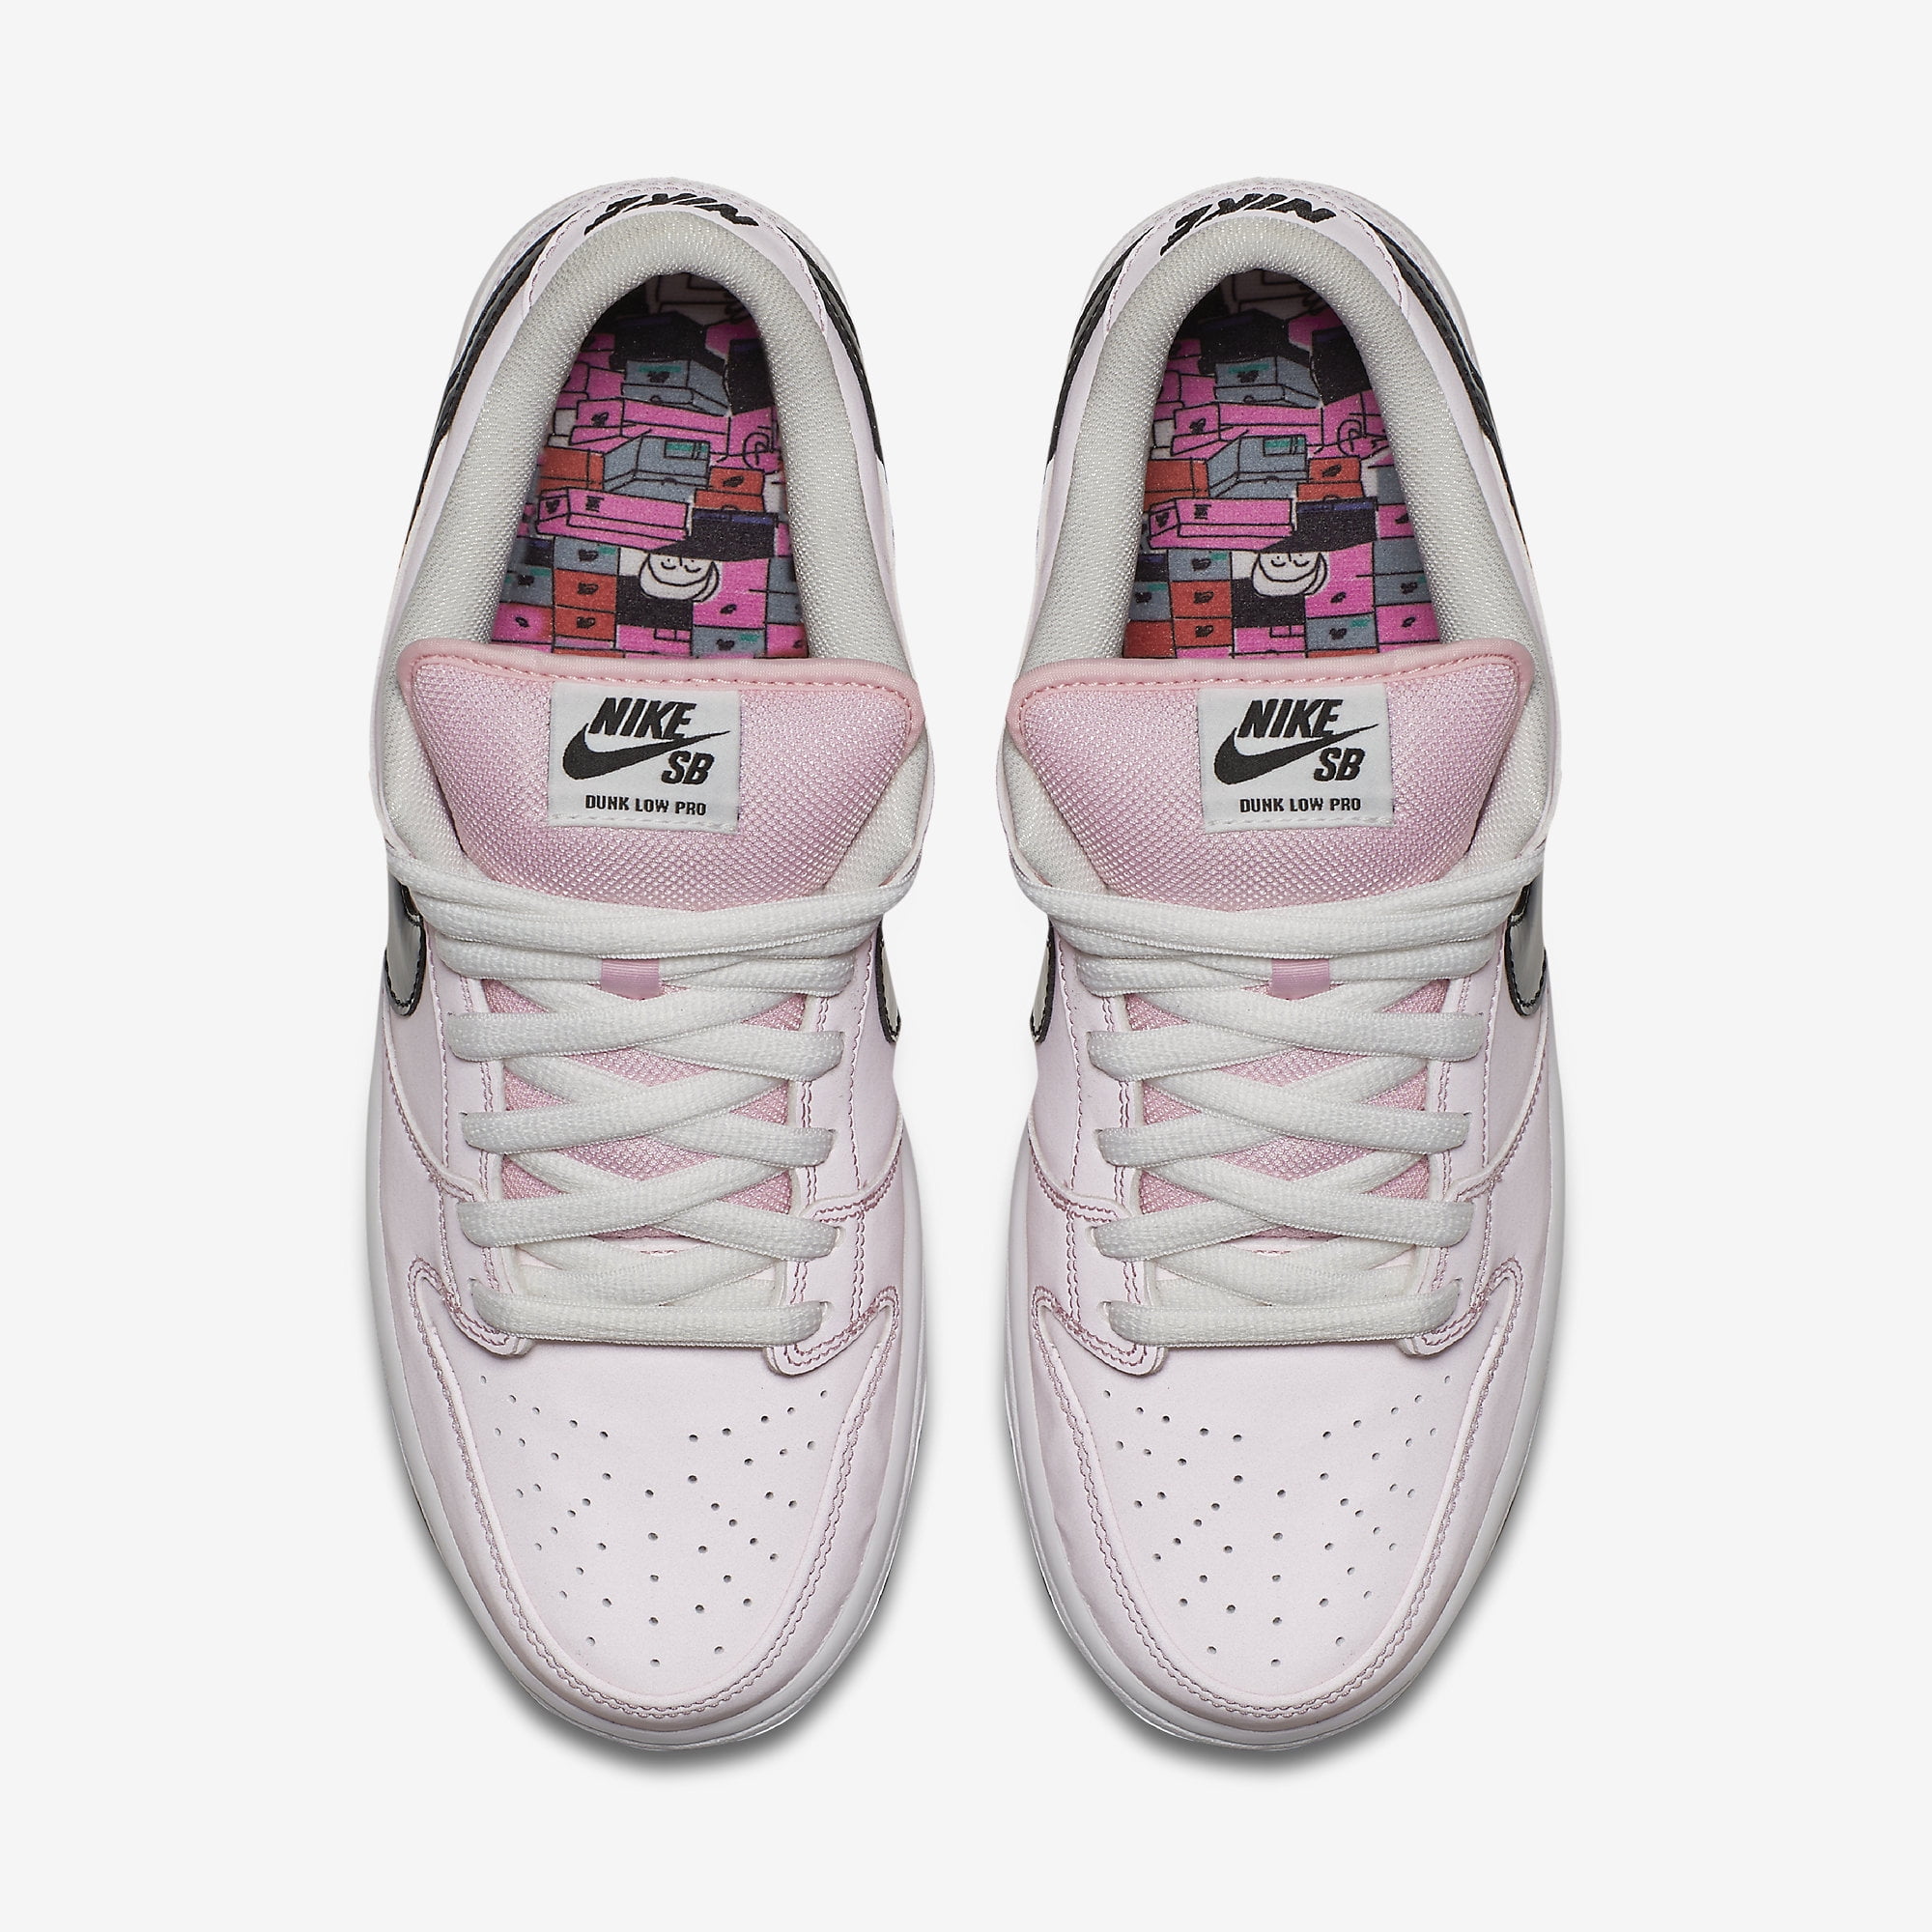 Mens Nike Dunk Low Elite SB Prism Pink Black White 833474-601